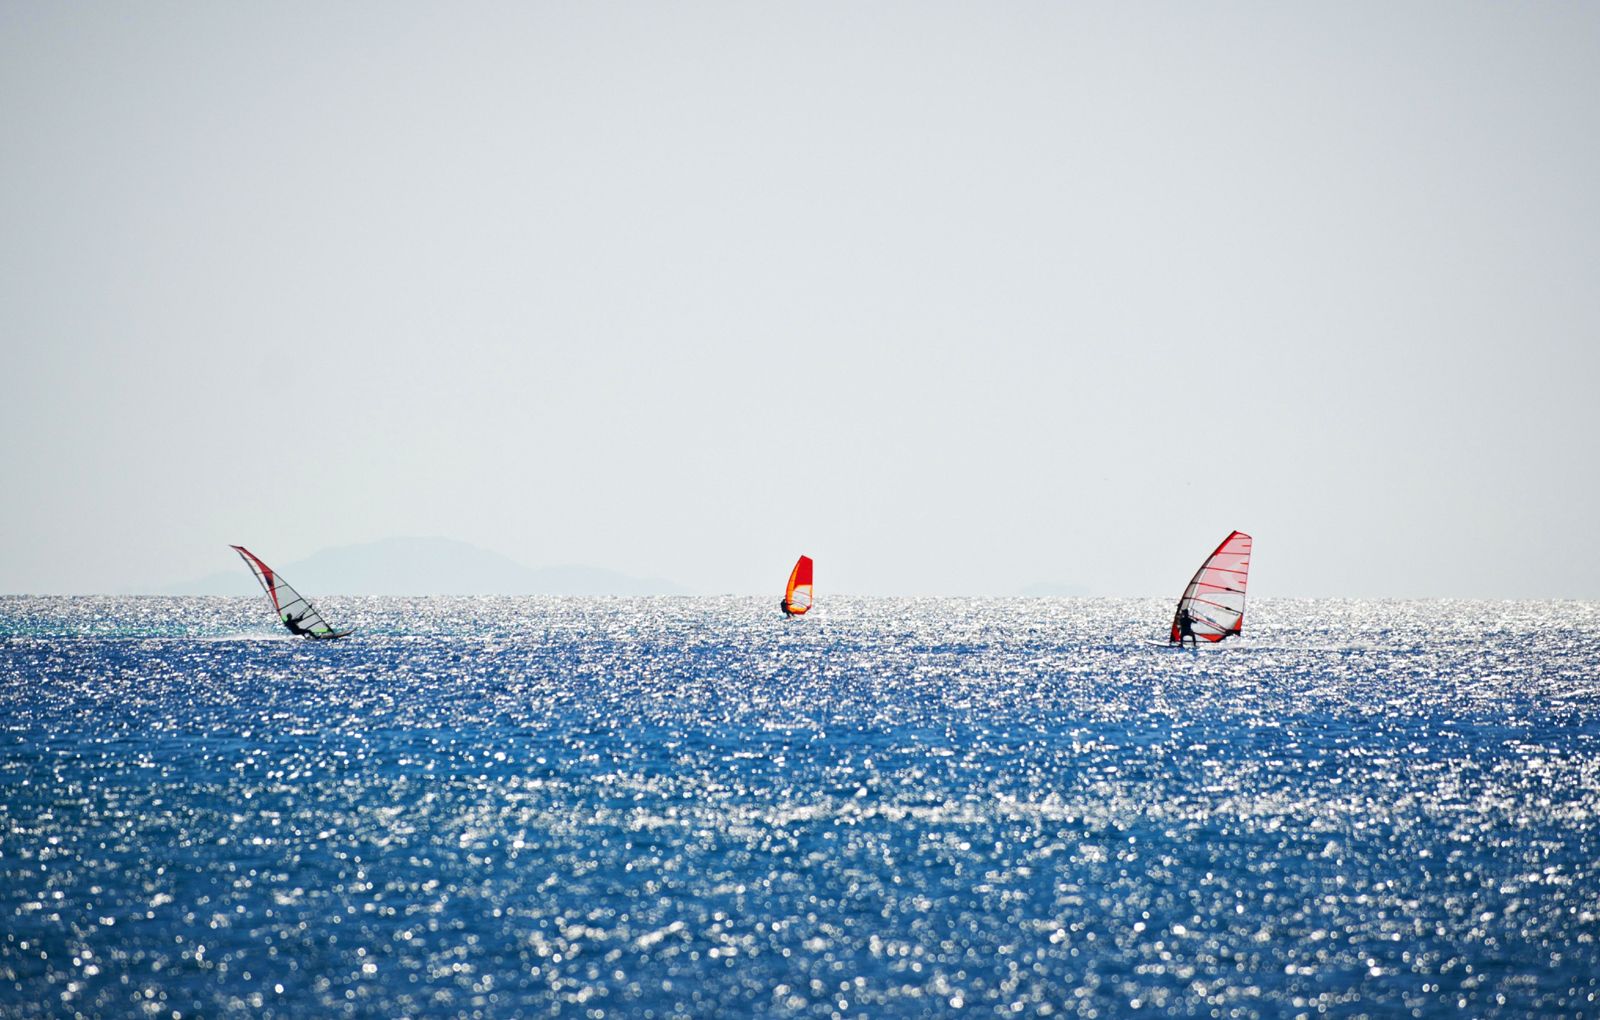 Polis - Paphos Windsurfing- Kitesurfing